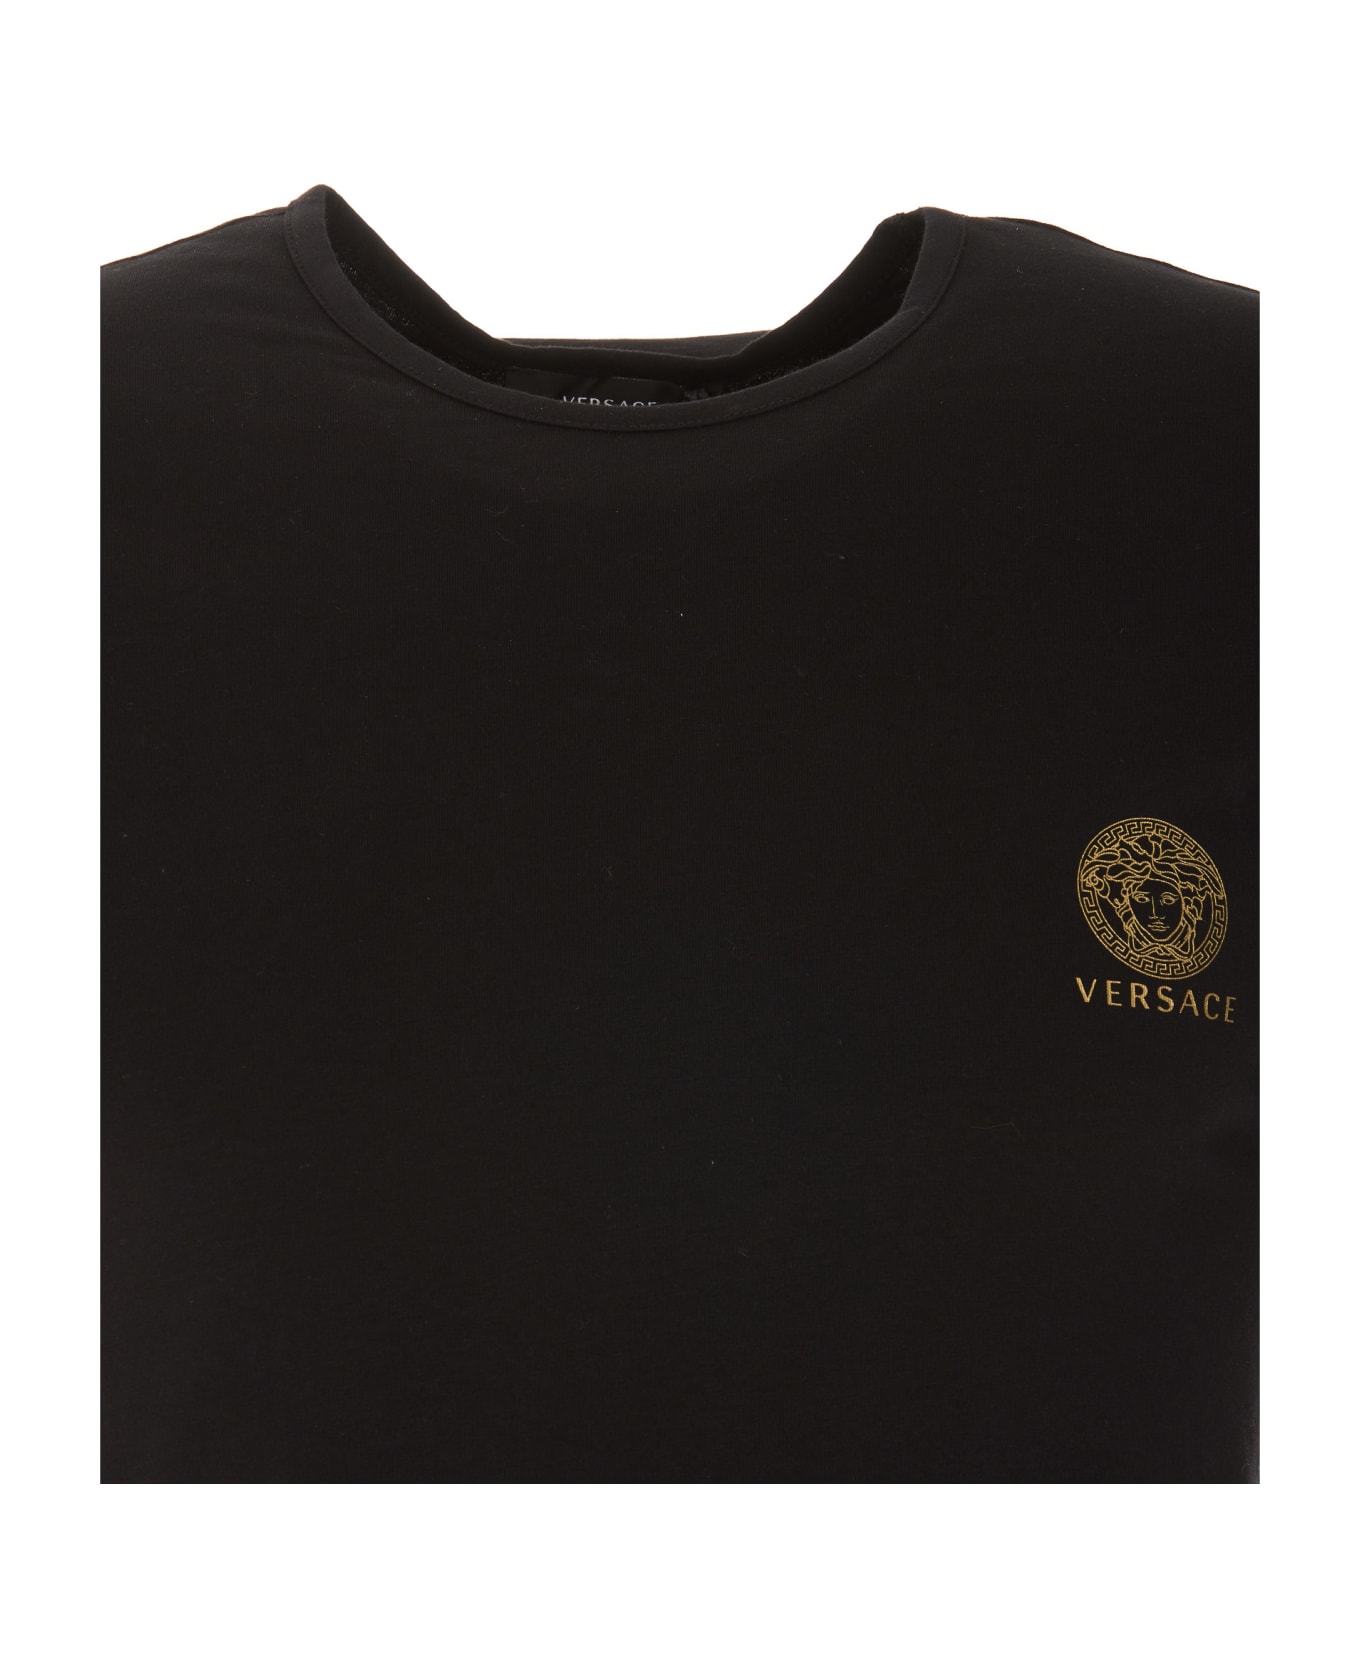 Versace Medusa Underwear T-shirt - Black シャツ